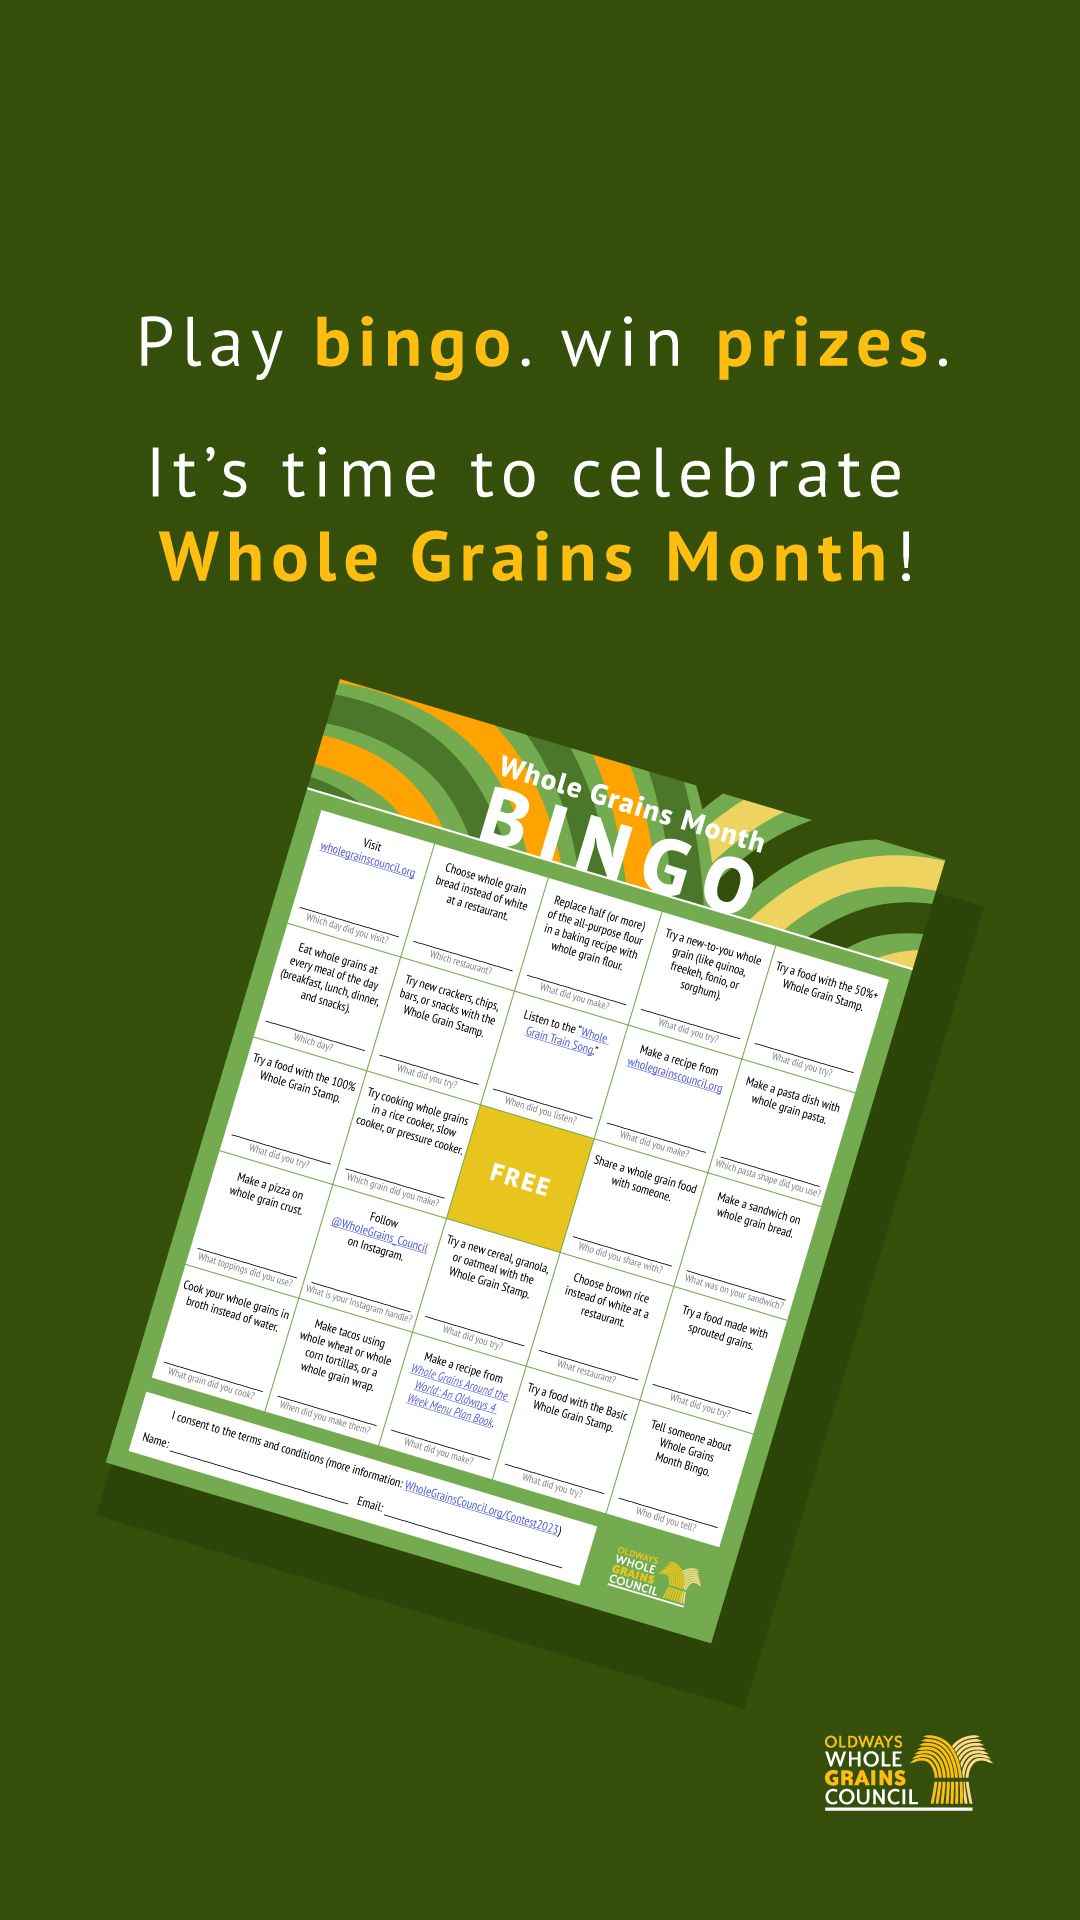 Whole Grains Month bingo